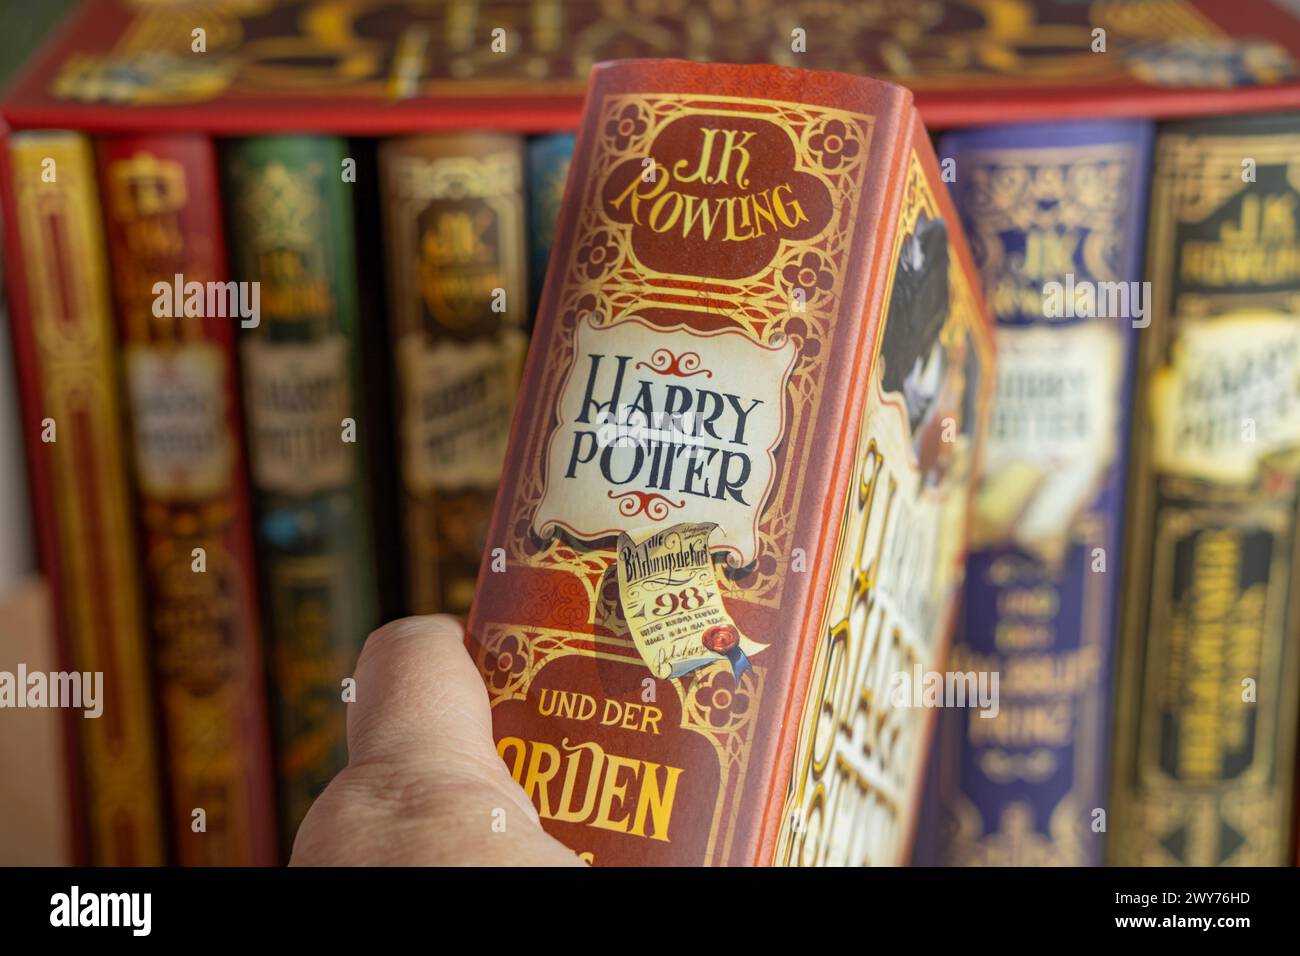 Magical Collection libri Rowling Harry Potter, attraente per gli amanti dei libri, intrattenimento per bambini, amicizia e scoperta di sé, Francoforte - dicembre Foto Stock